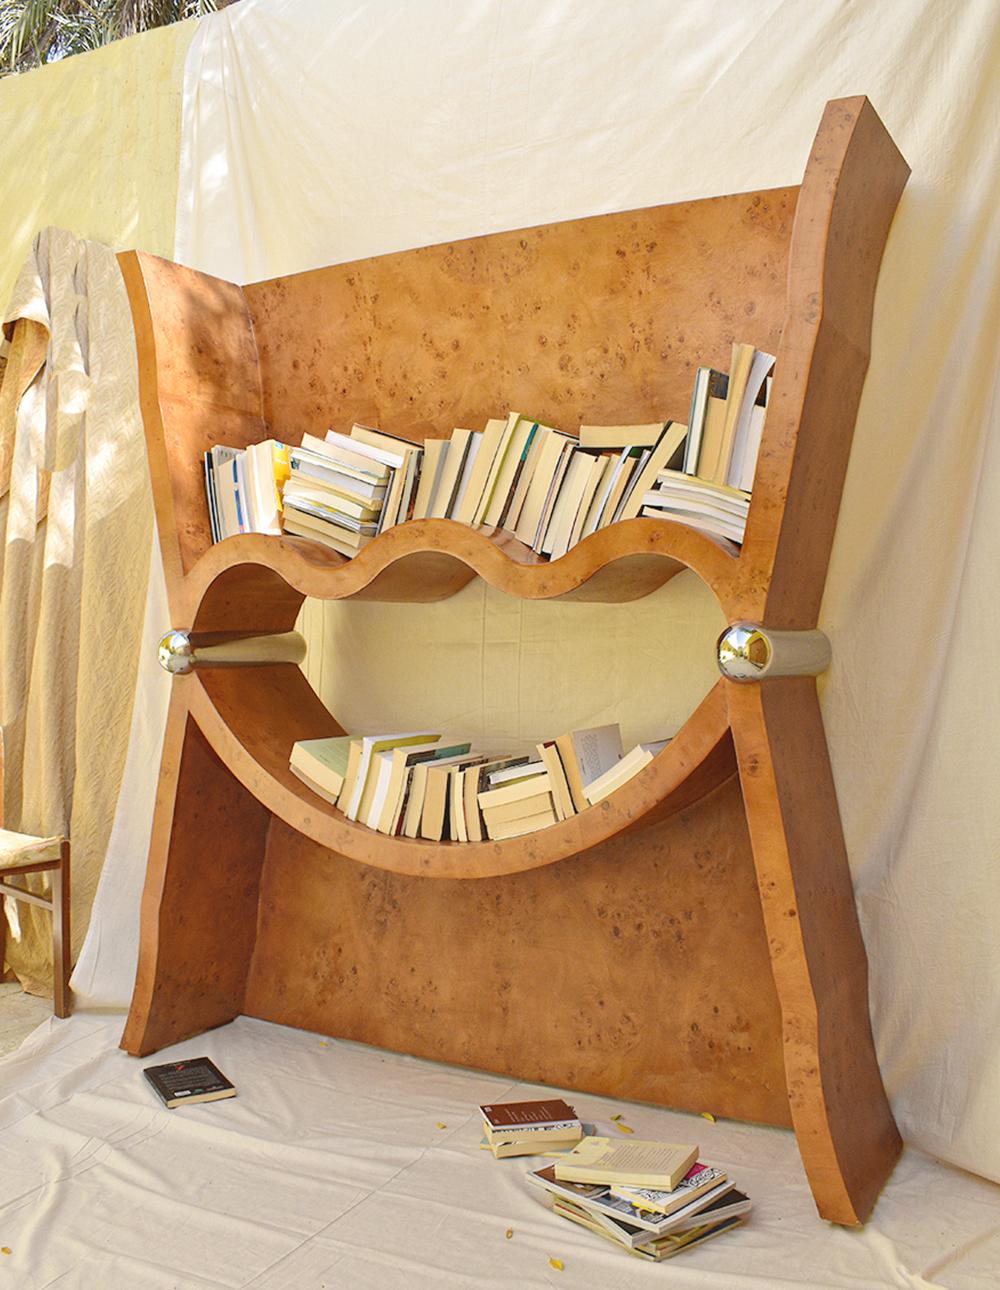 Saudi Arabian Hug Bookcase by Rejo Studio